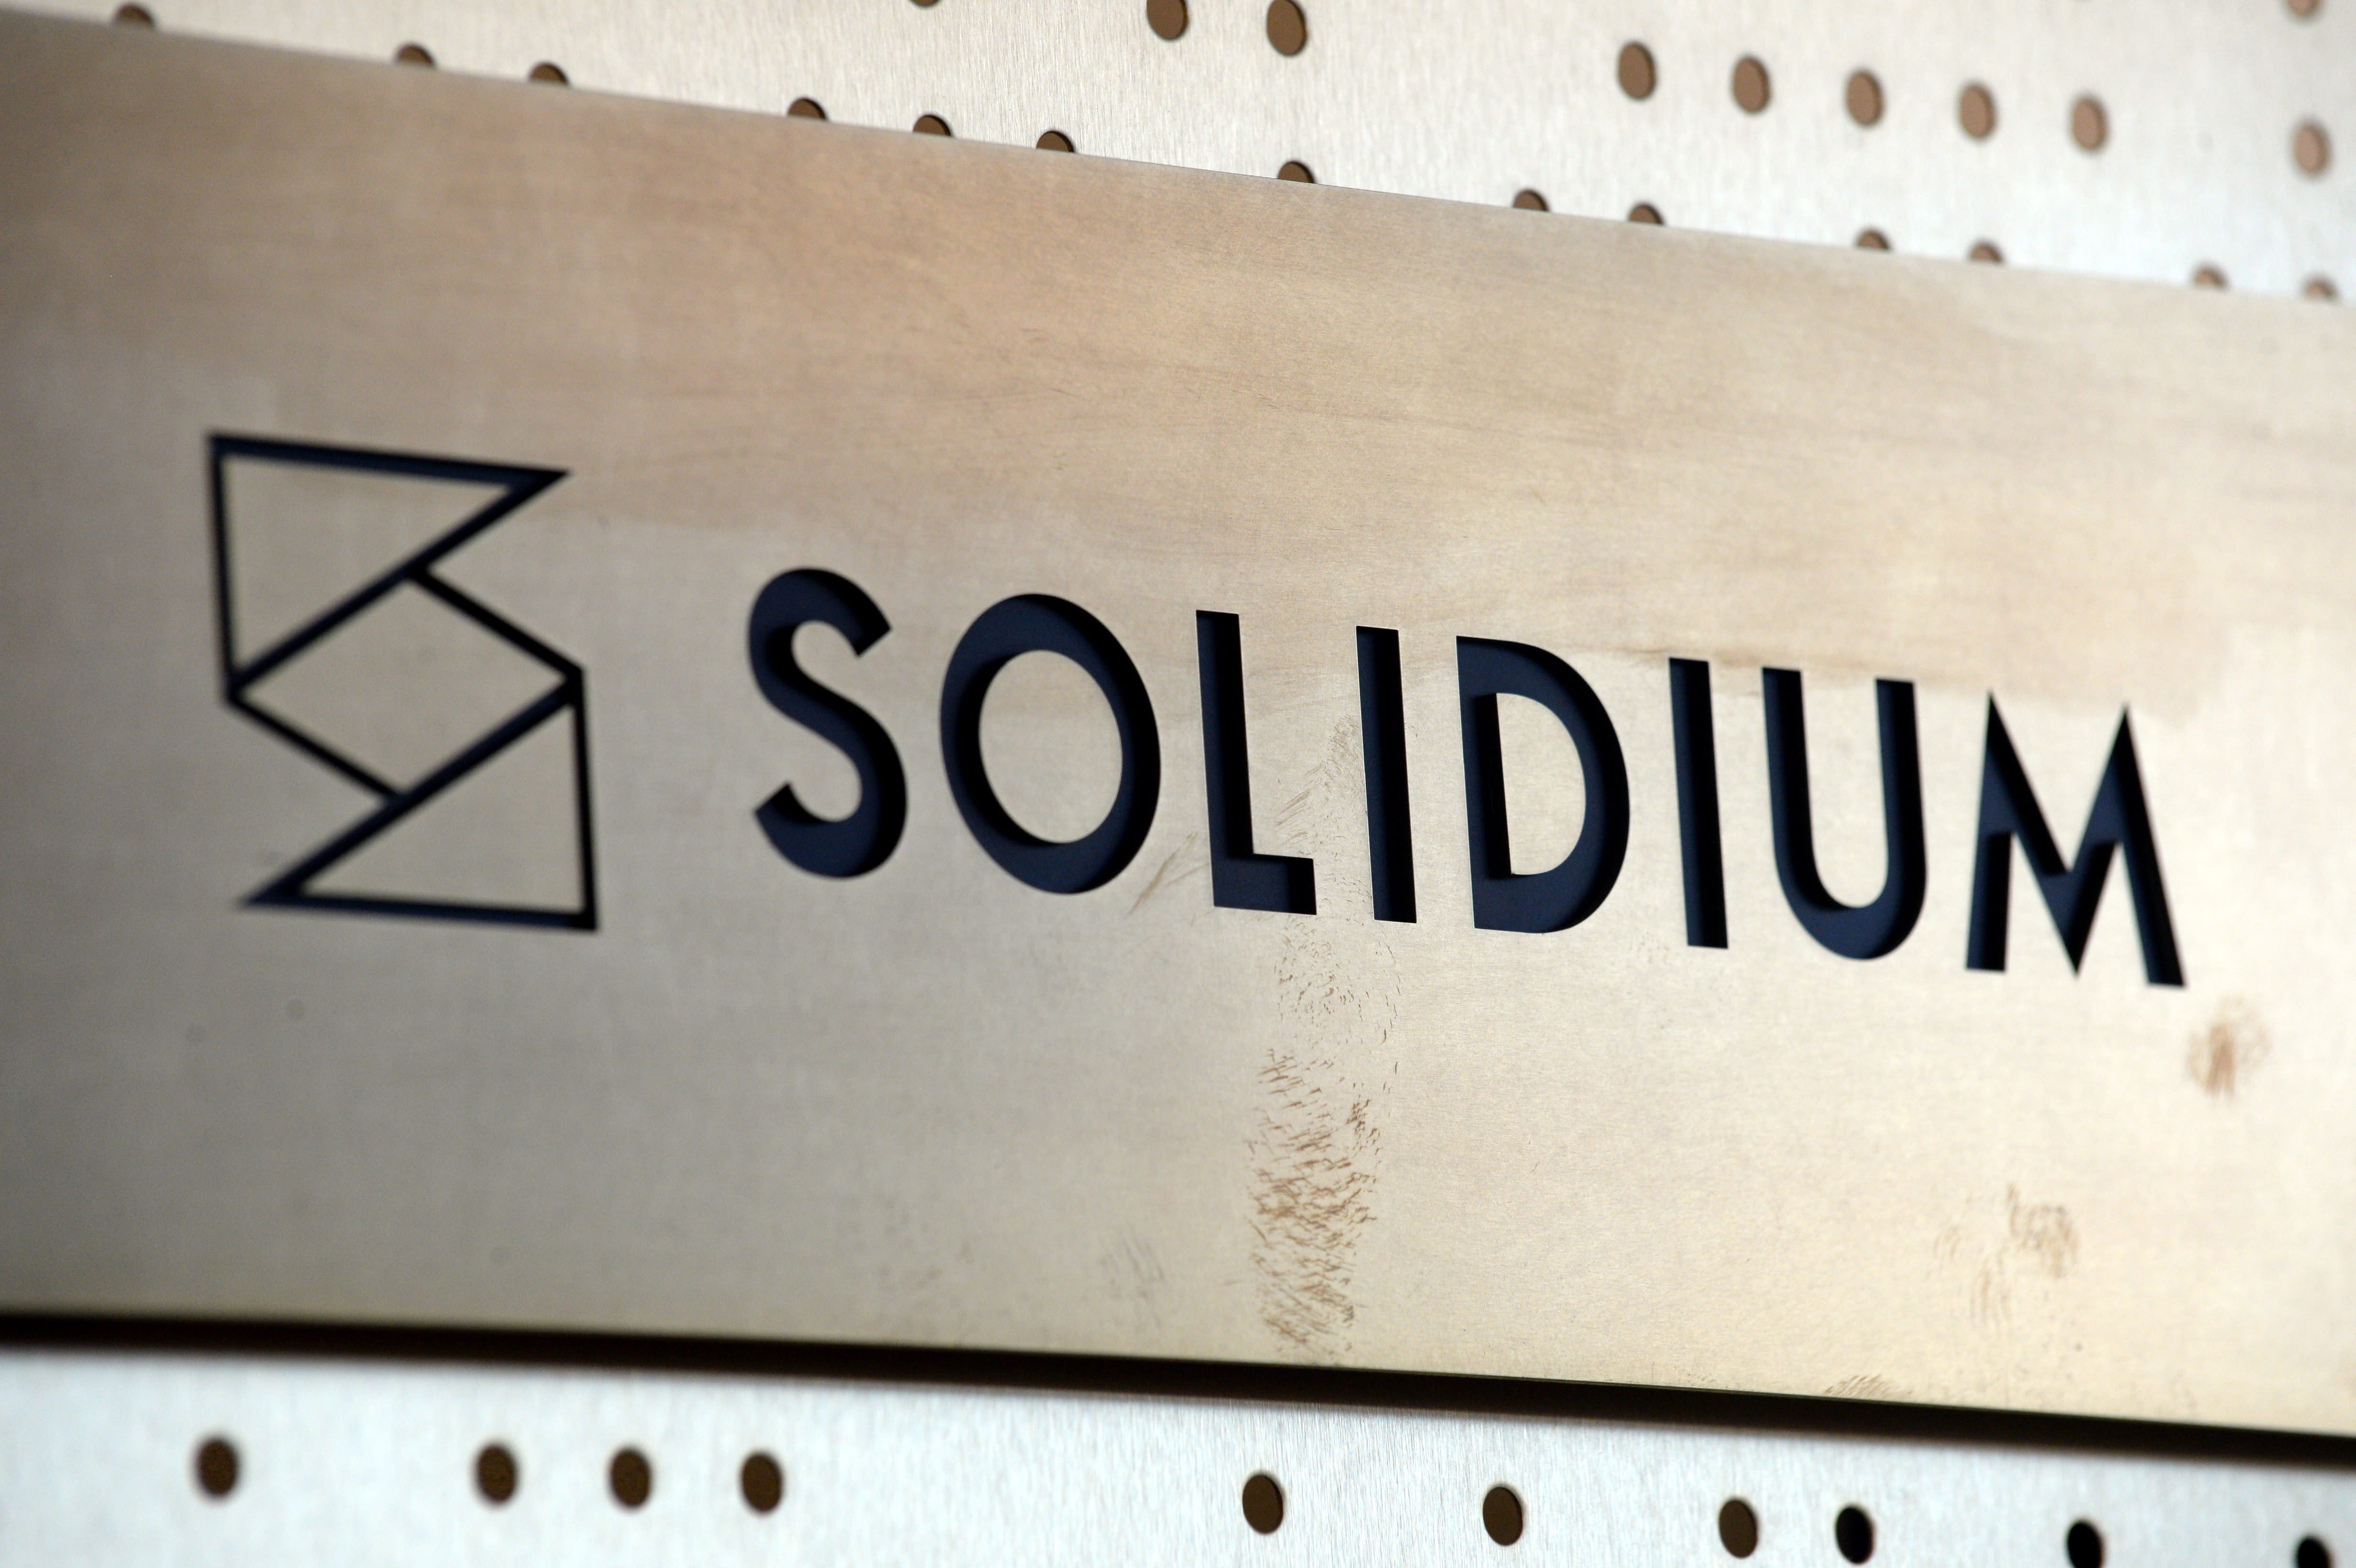 Die staatliche Beteiligungsgesellschaft Solidium steht bei den Kapitalgesellschaften ganz oben auf der Steuerliste